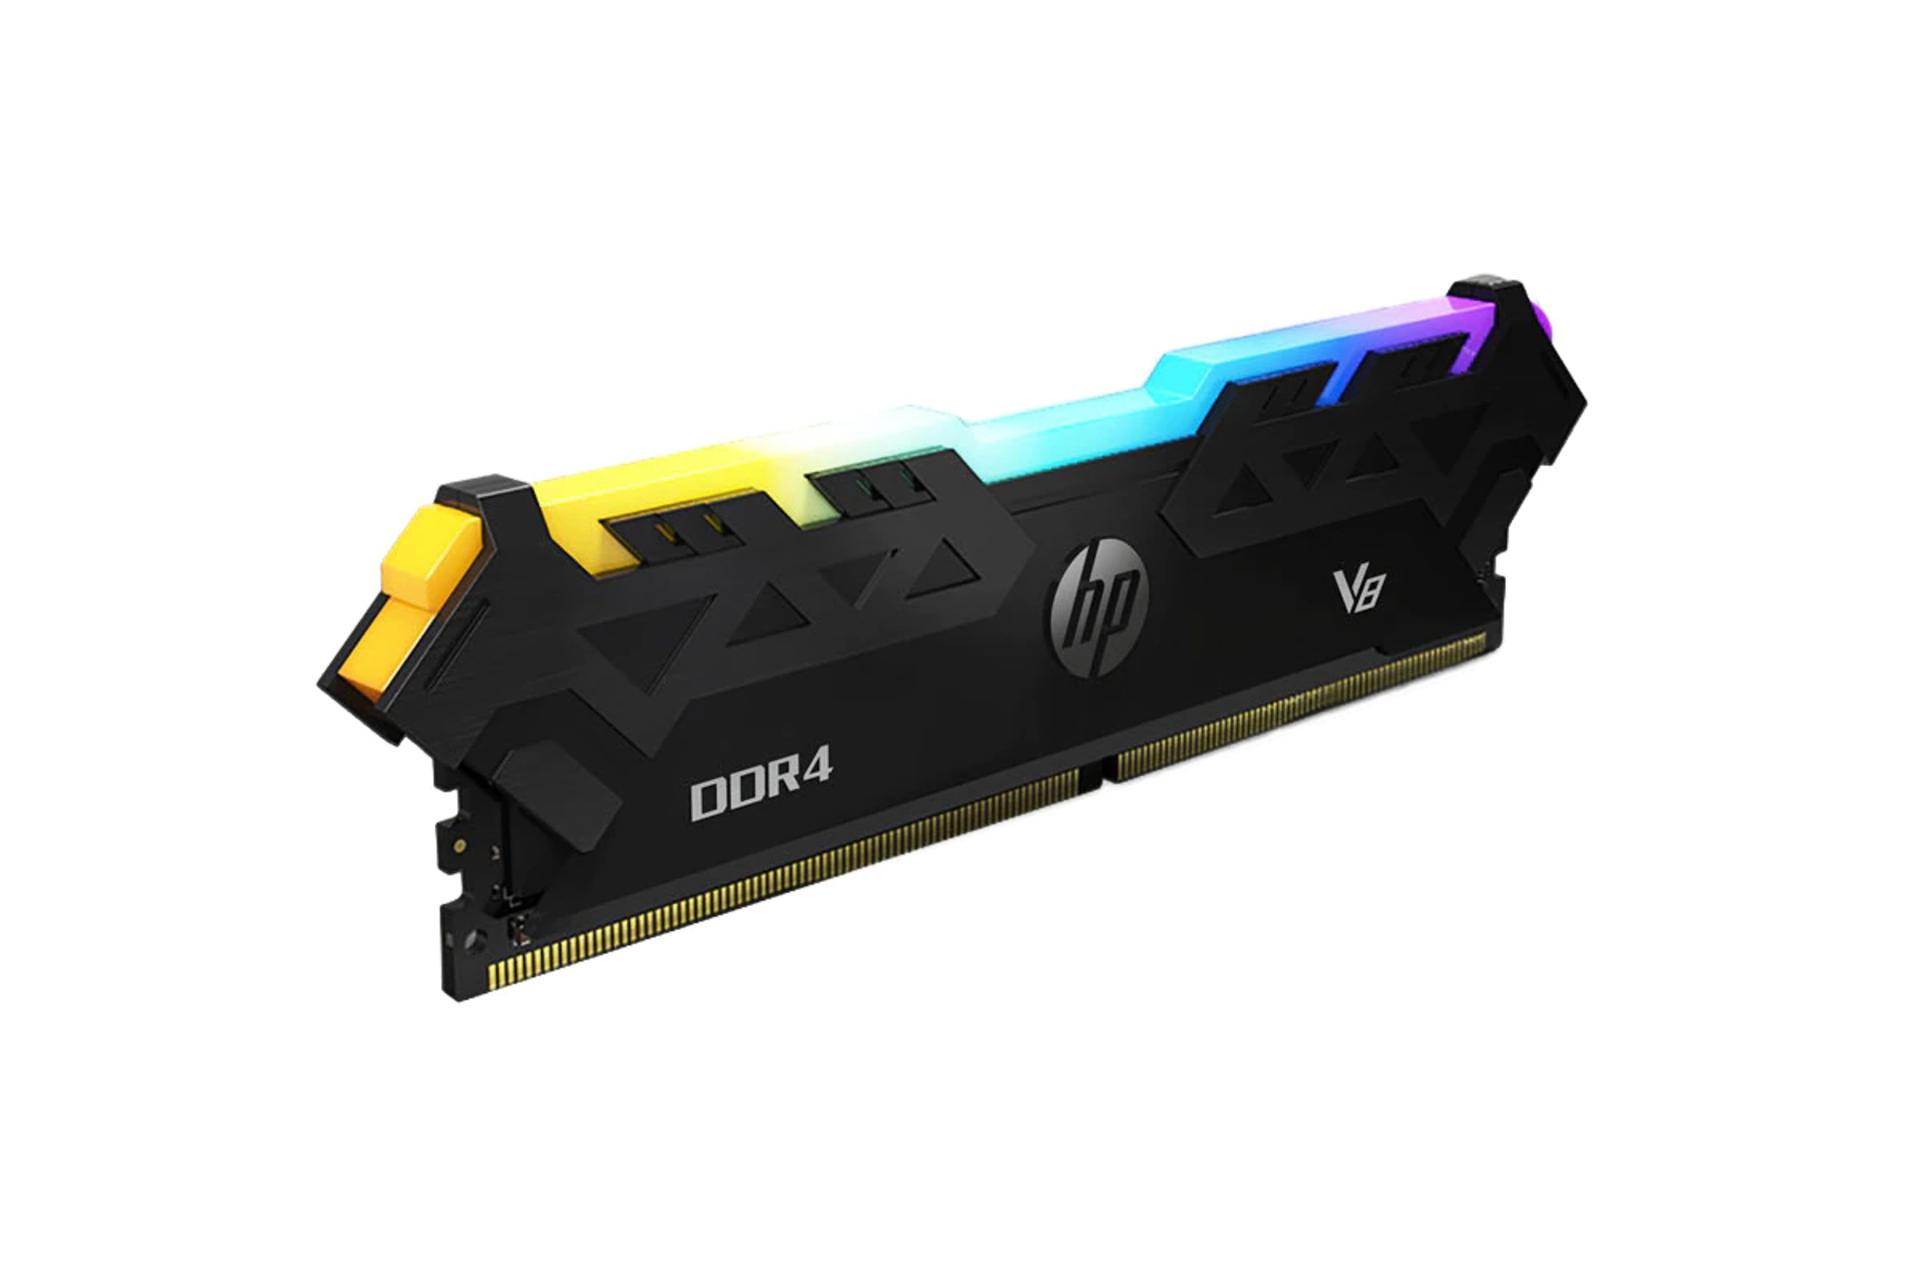 نمای کنار رم اچ پی V8 ظرفیت 8 گیگابایت از نوع DDR4-3000